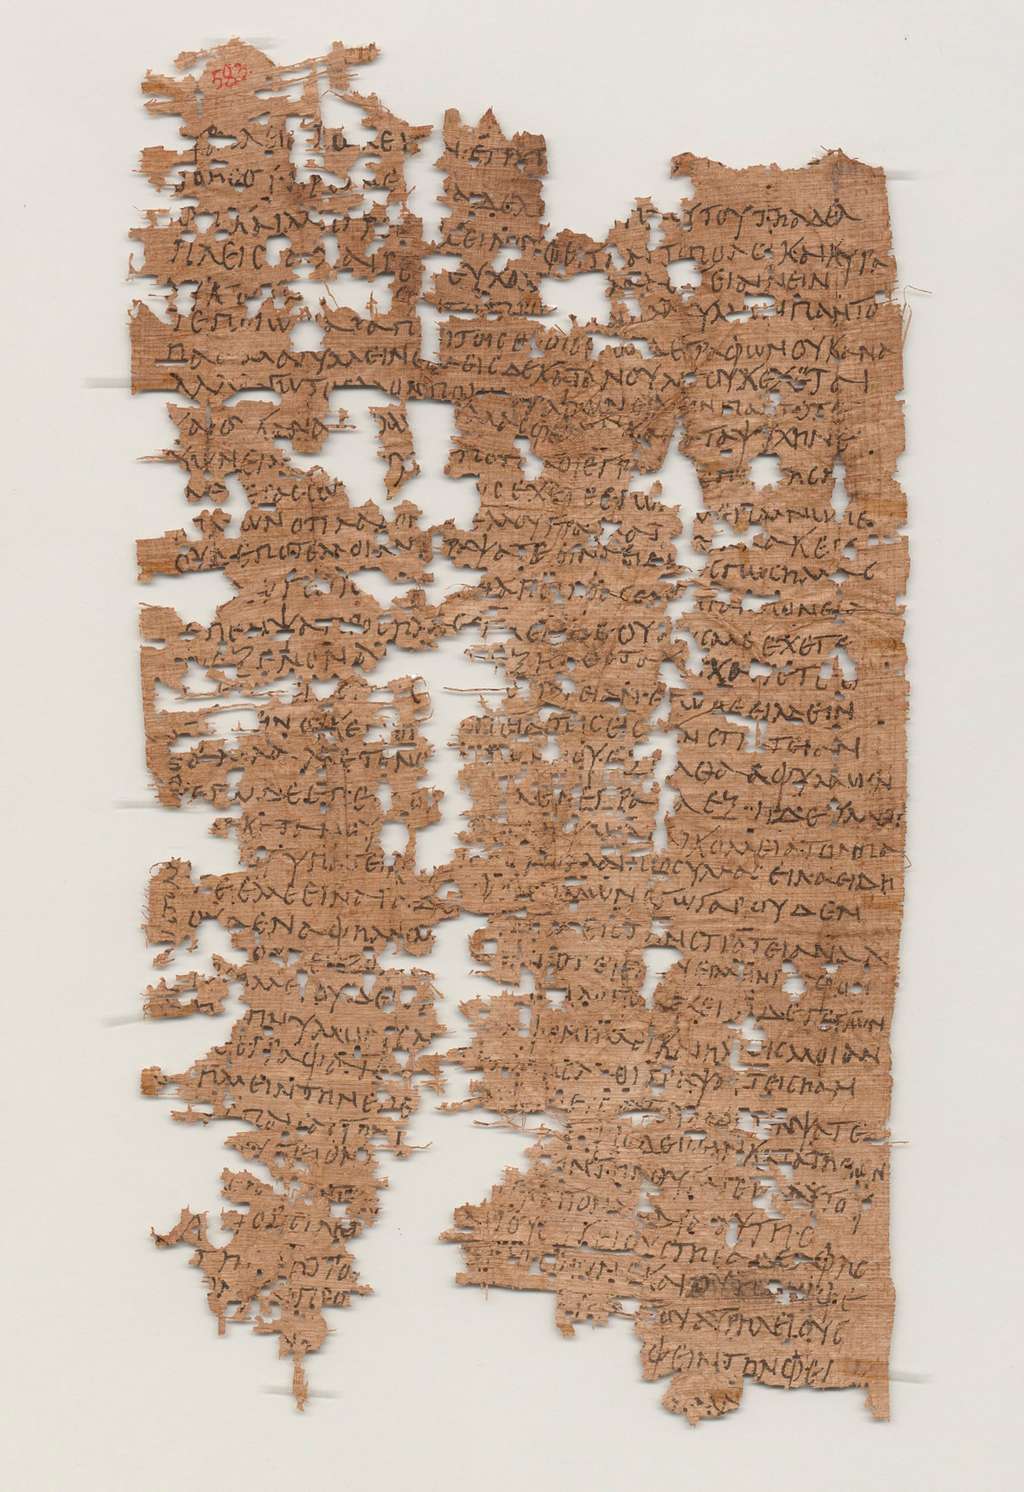  Le papyrus est bien abîmé, mais une grande partie a pu être déchiffrée. On connaît donc les tourments qui frappaient Aurelius Polion à l’époque, s’inquiétant et s’énervant de ne pas avoir de nouvelles de ses proches. Oubli de leur part ? Censure ? On ignore les raisons de ce silence. © Université de Californie, <em>Berkley's Bancroft Library</em>